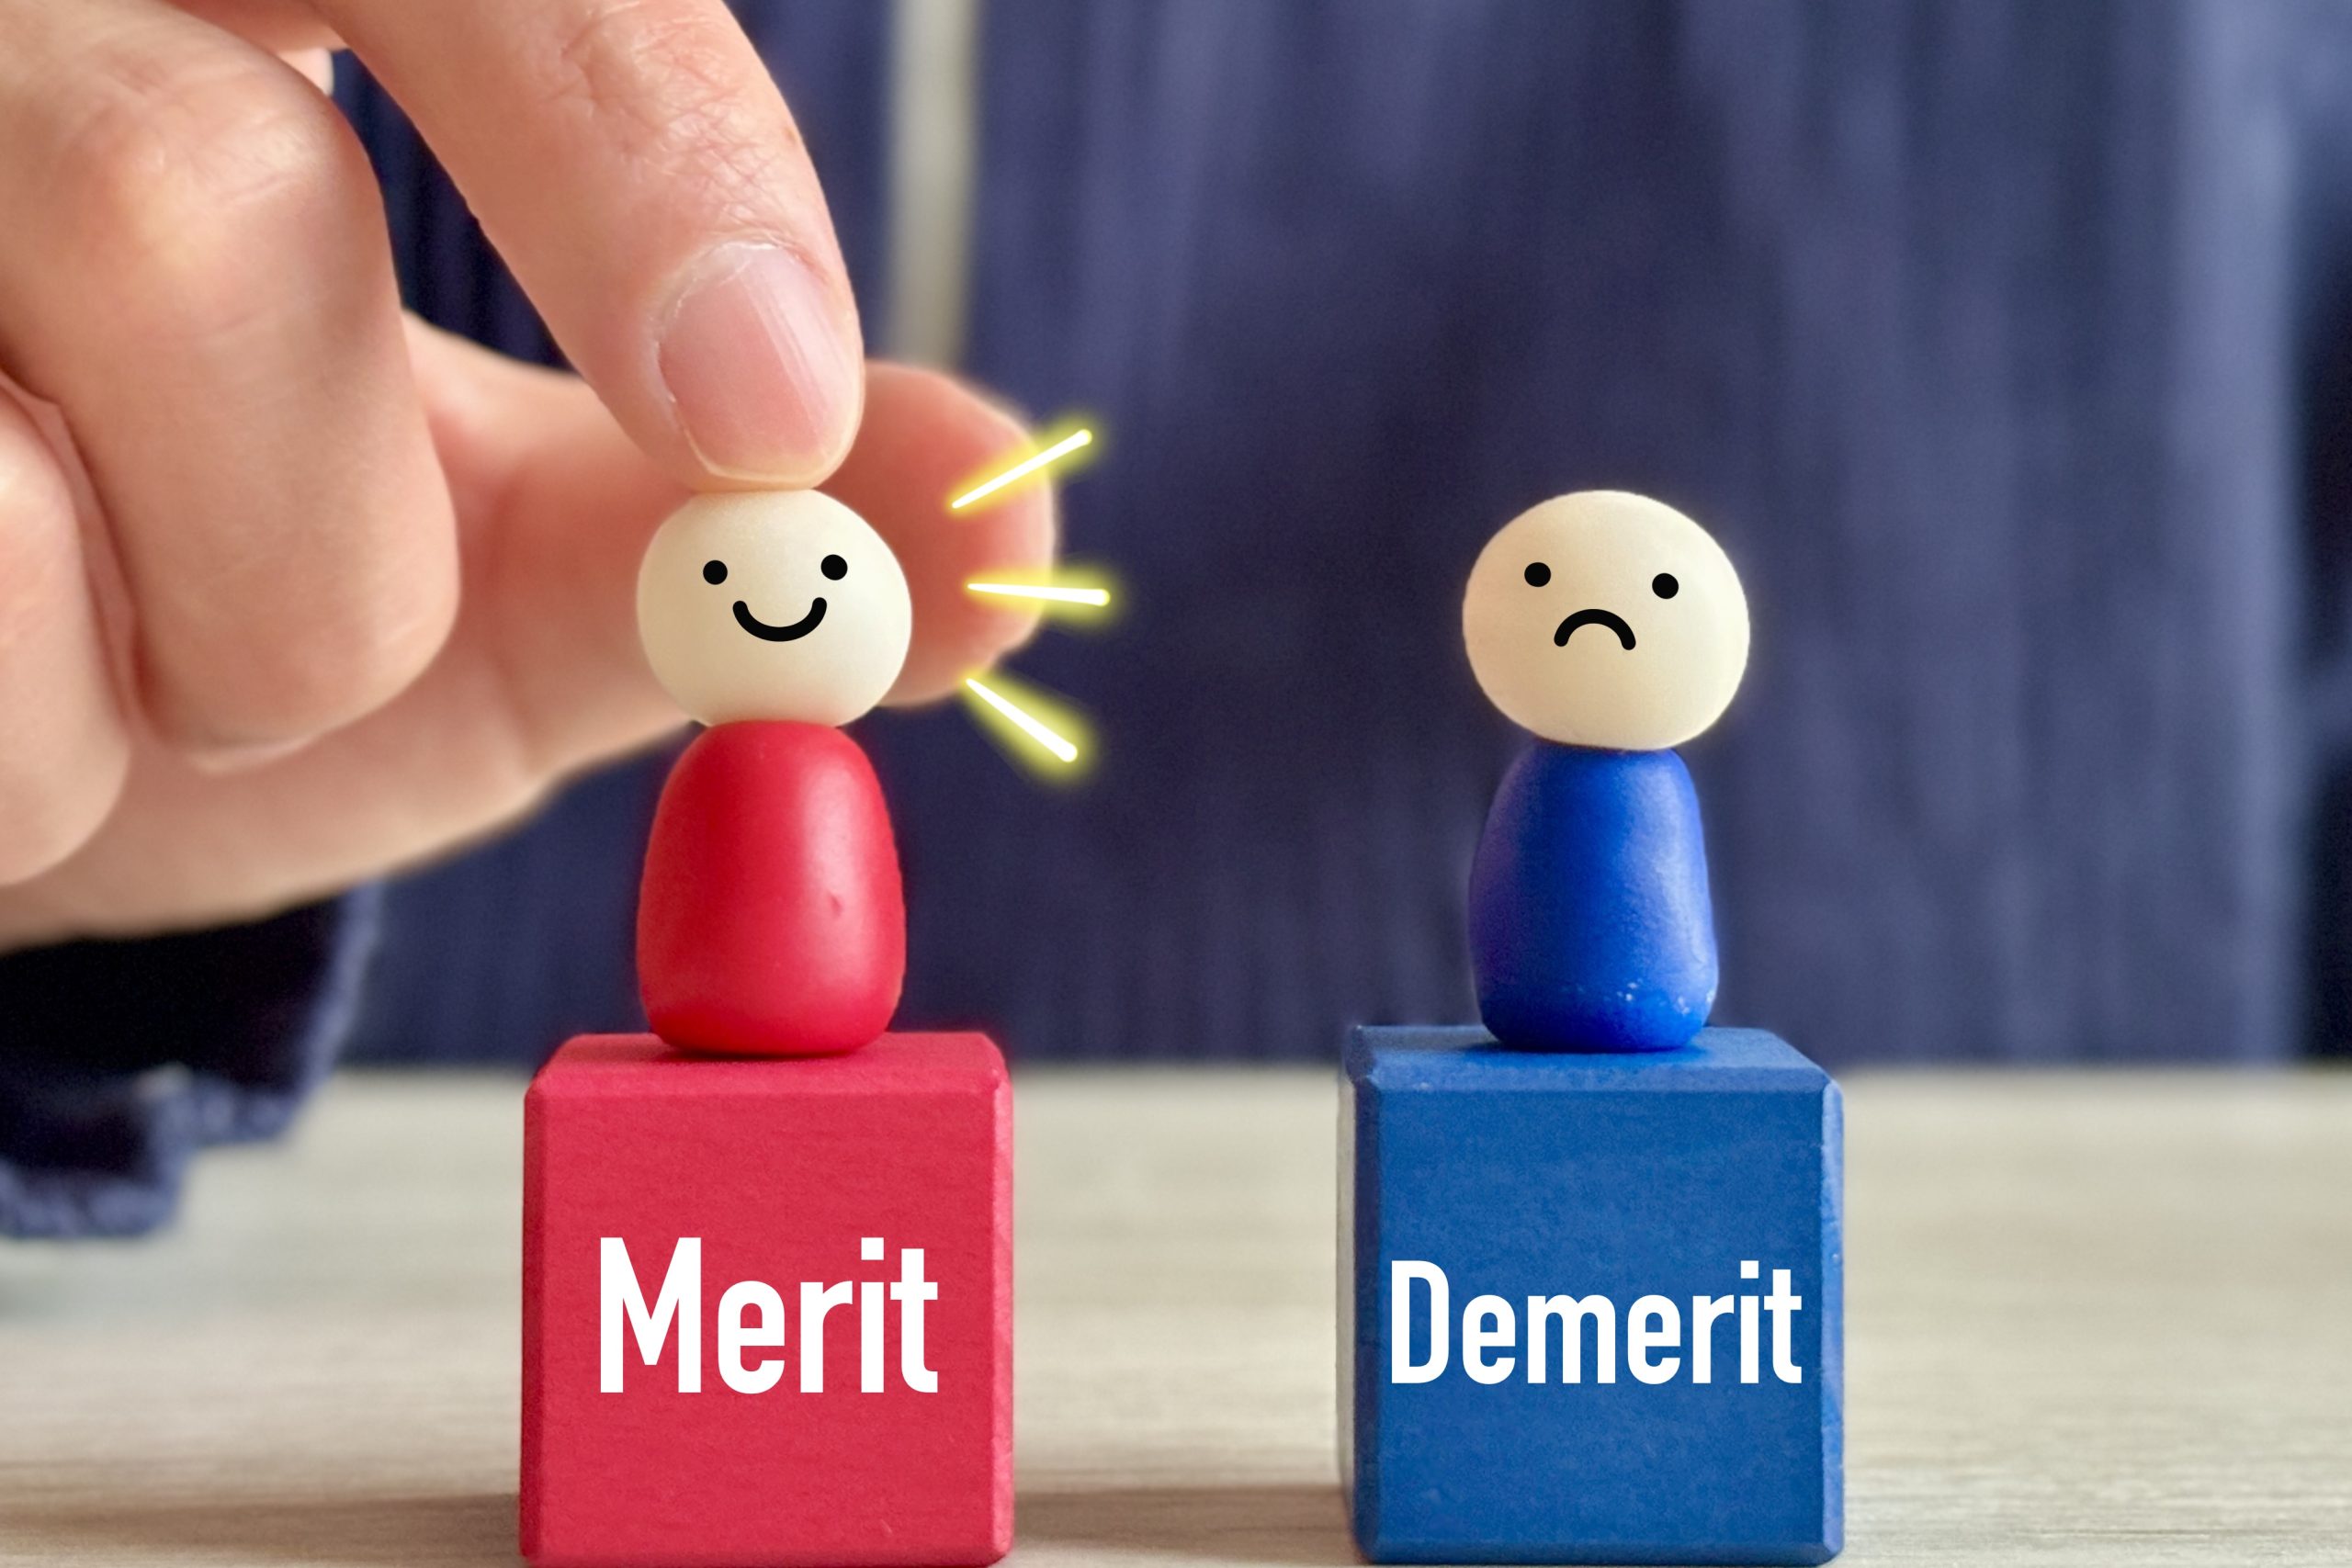 MeritとDemeritと書かれたマスコットの写真